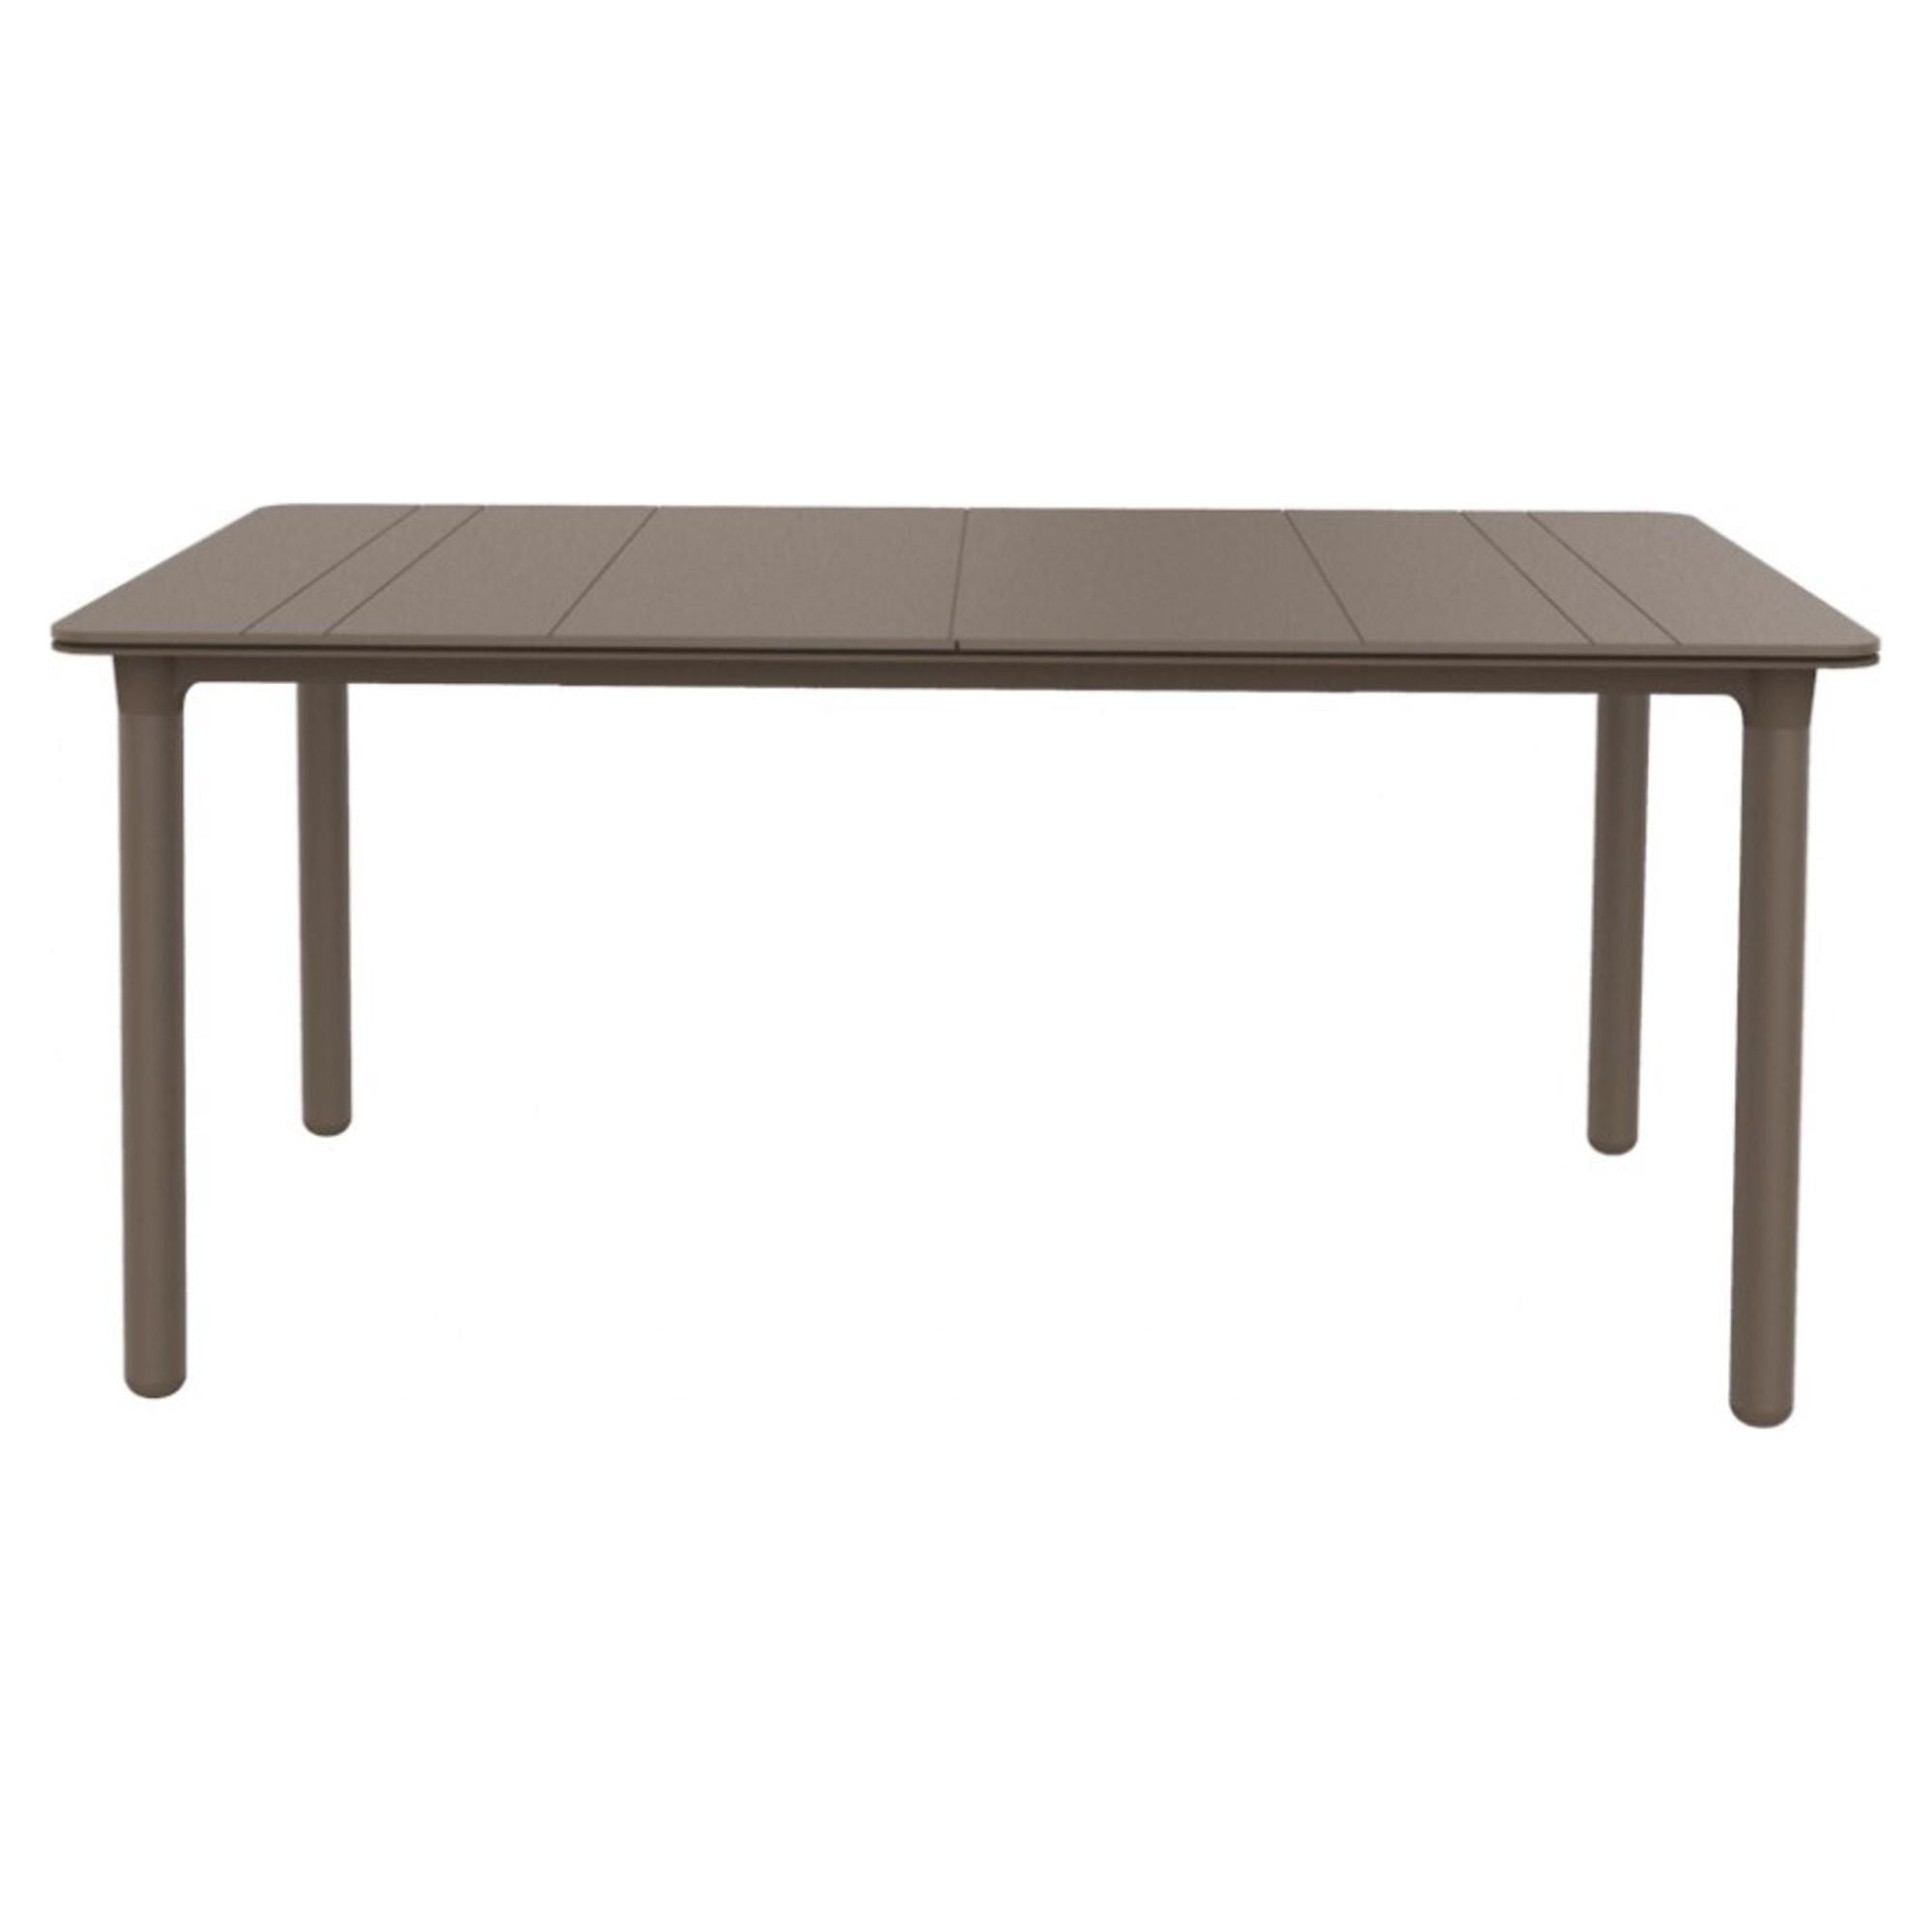 Garbar NOA rectangular table indoors, outdoors 160x90